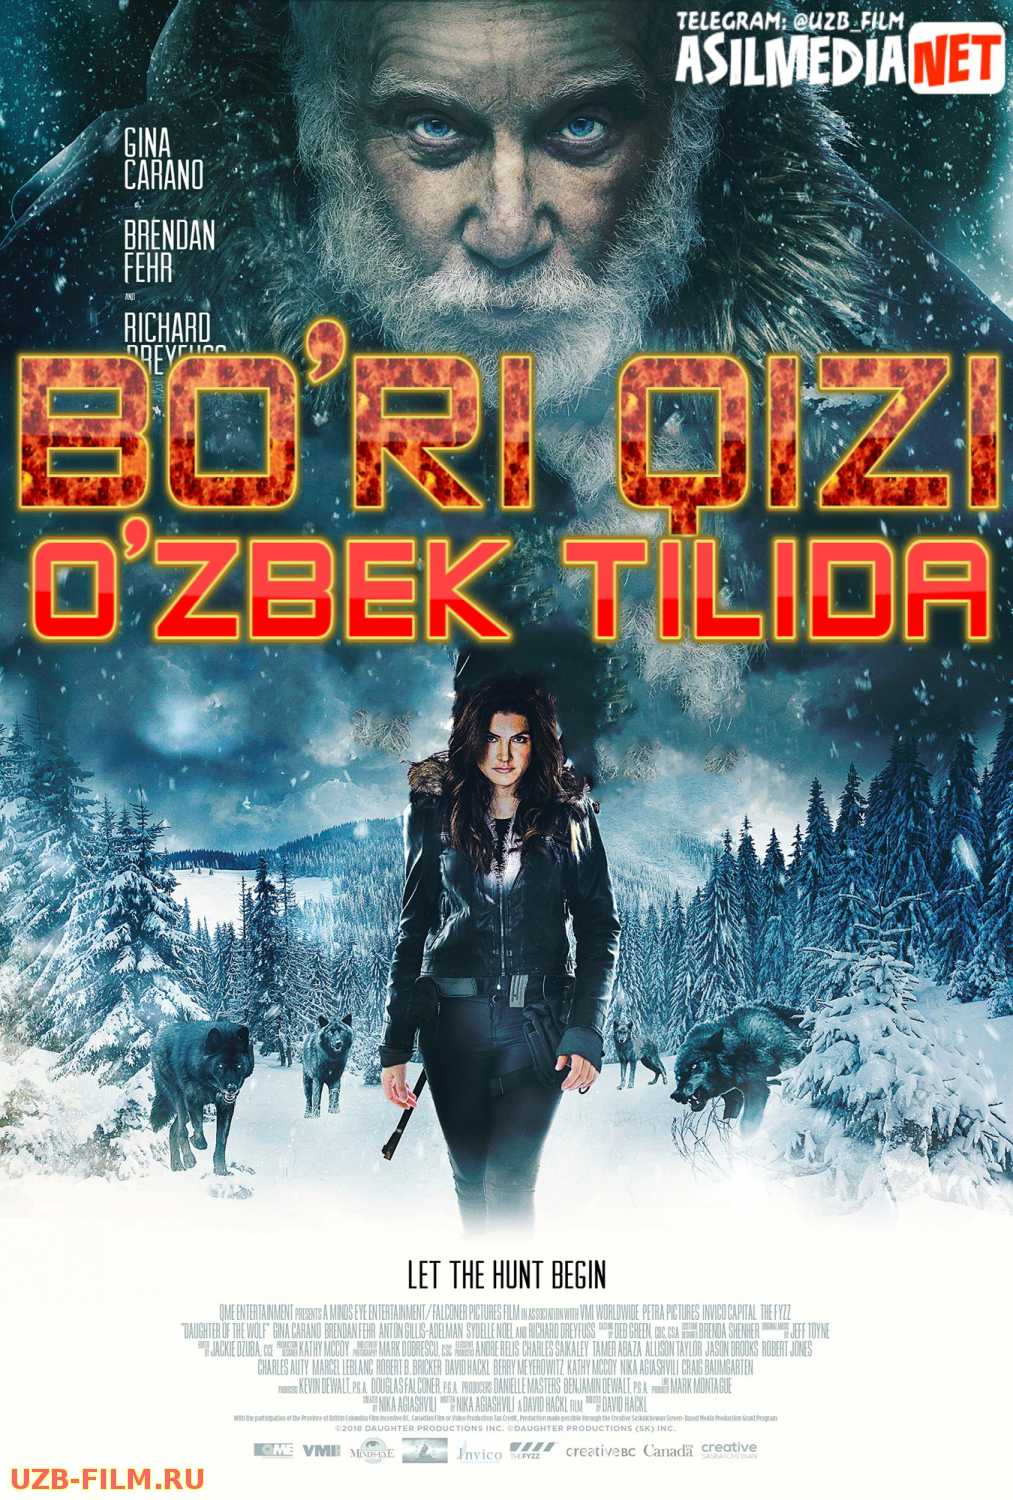 Bo'ri qizi / Bo'ri qiz Uzbek tilida 2019 O'zbekcha tarjima kino HD